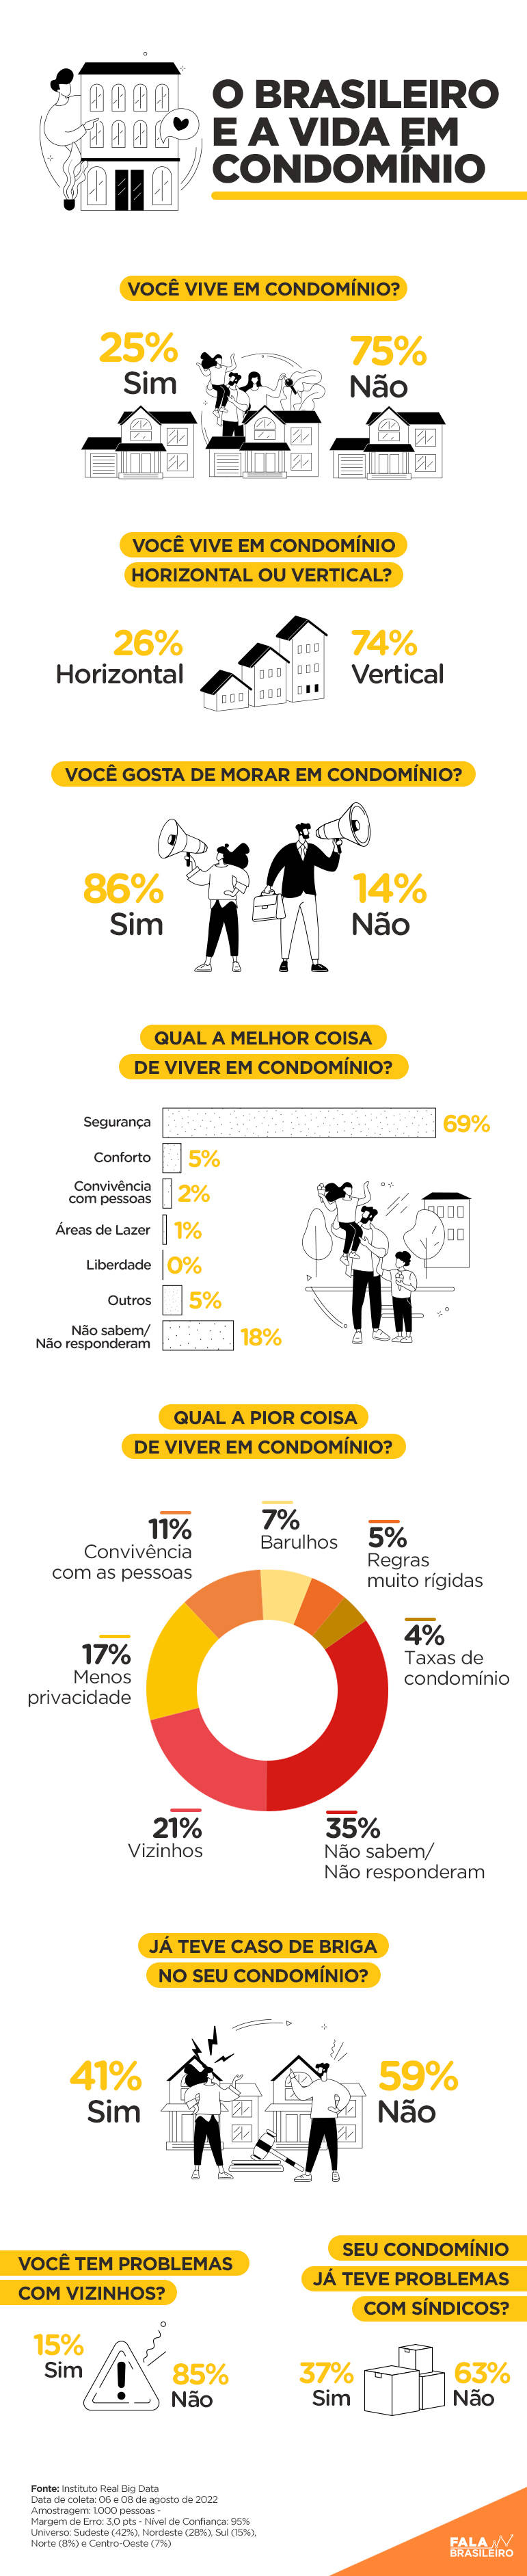 O brasileiro e a vida em condomínio